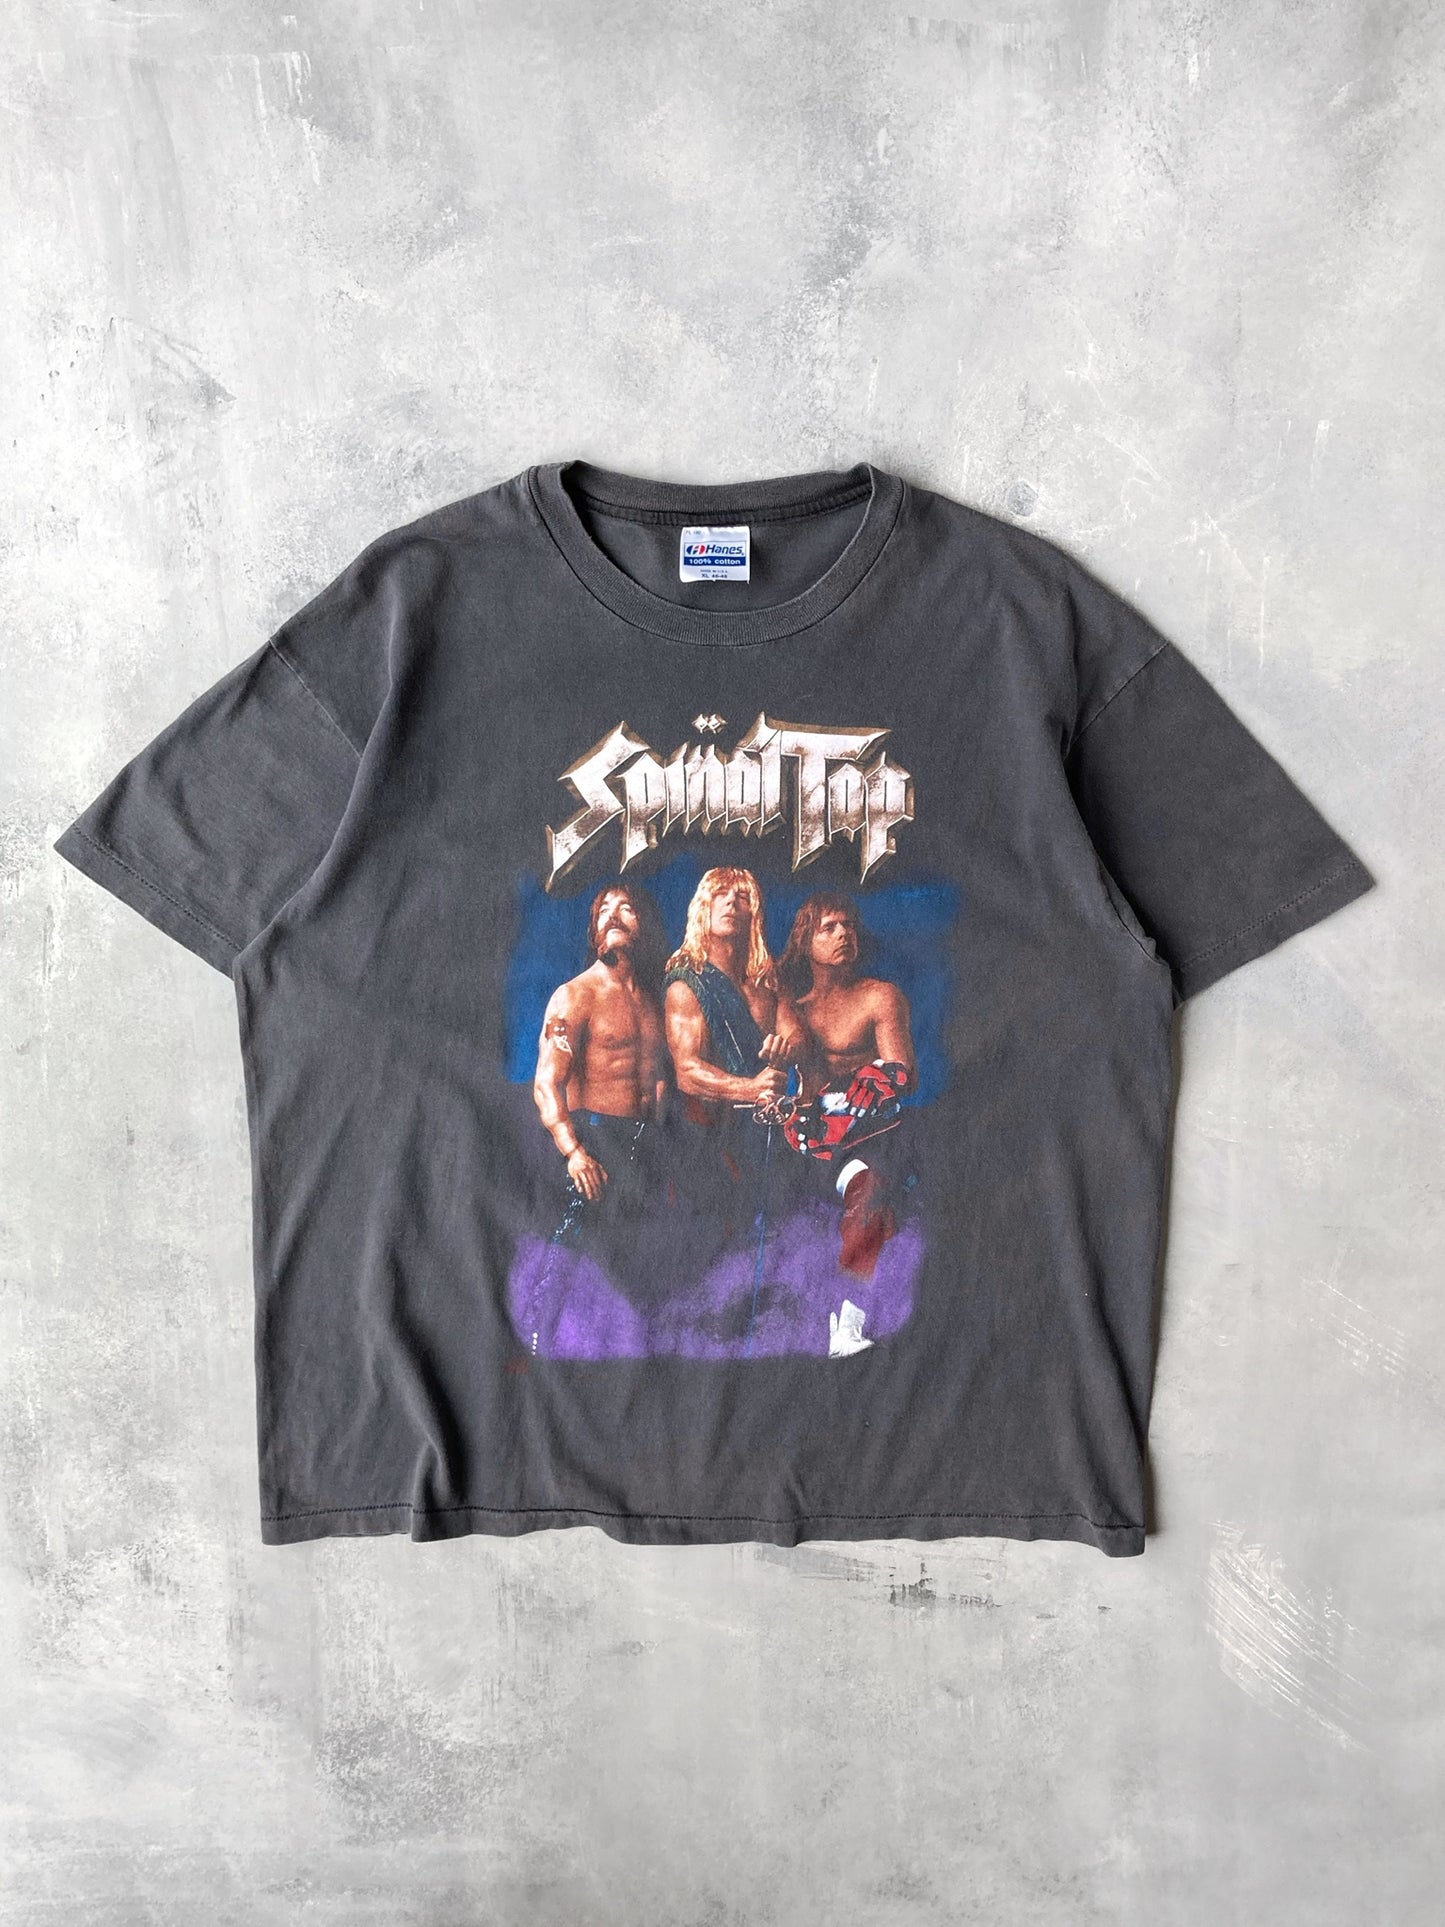 Spinal Tap T-Shirt '92 - XL